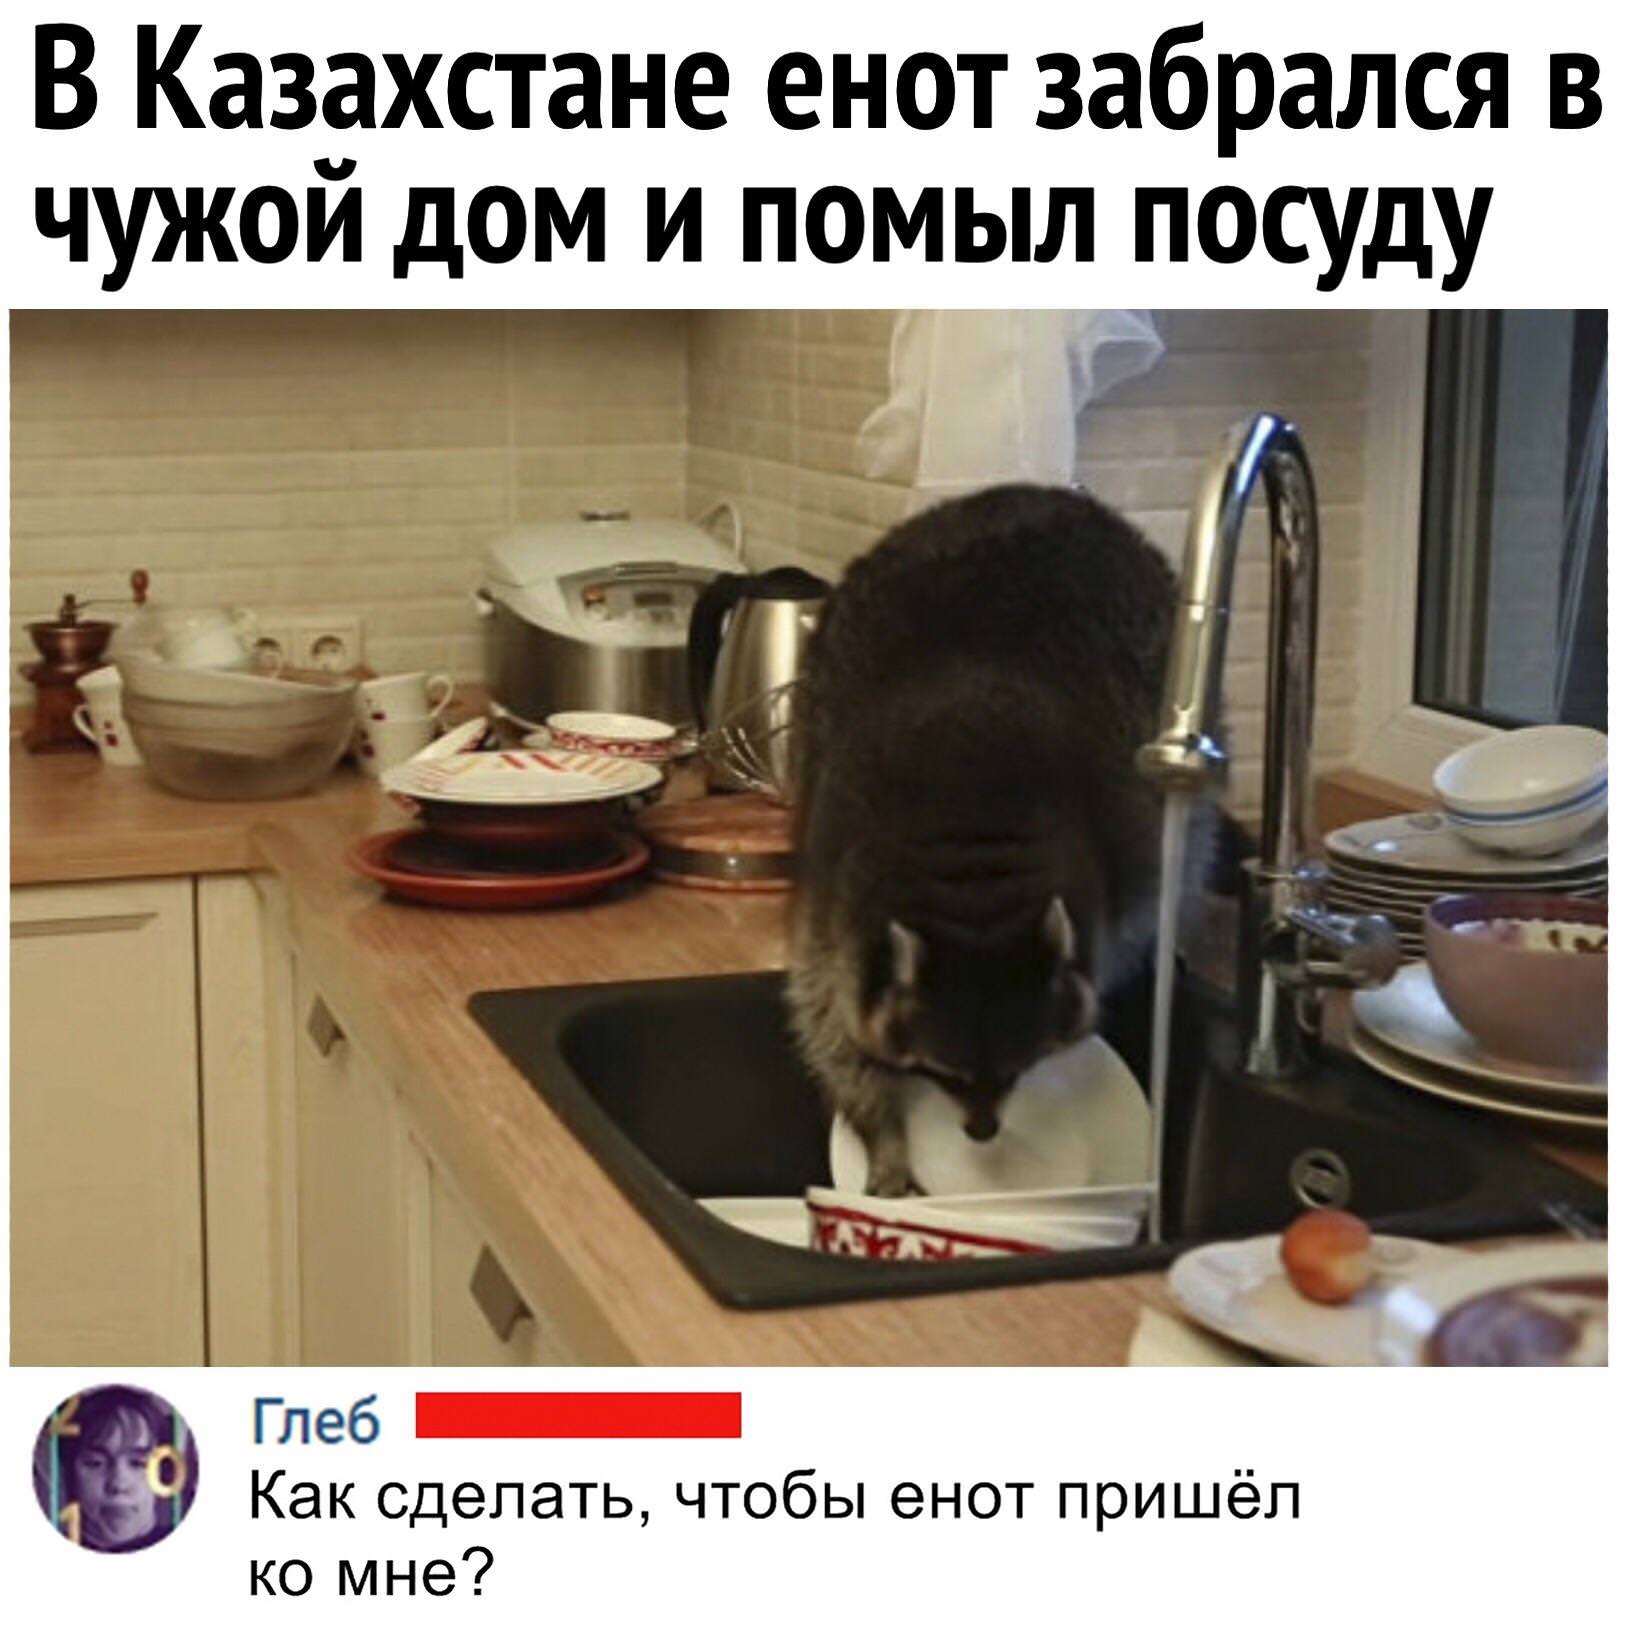 Мыть посуду ночью. Собачка моет посуду. Енот с бодуна. Медведь моет посуду. Помыли посуду покормили кота.